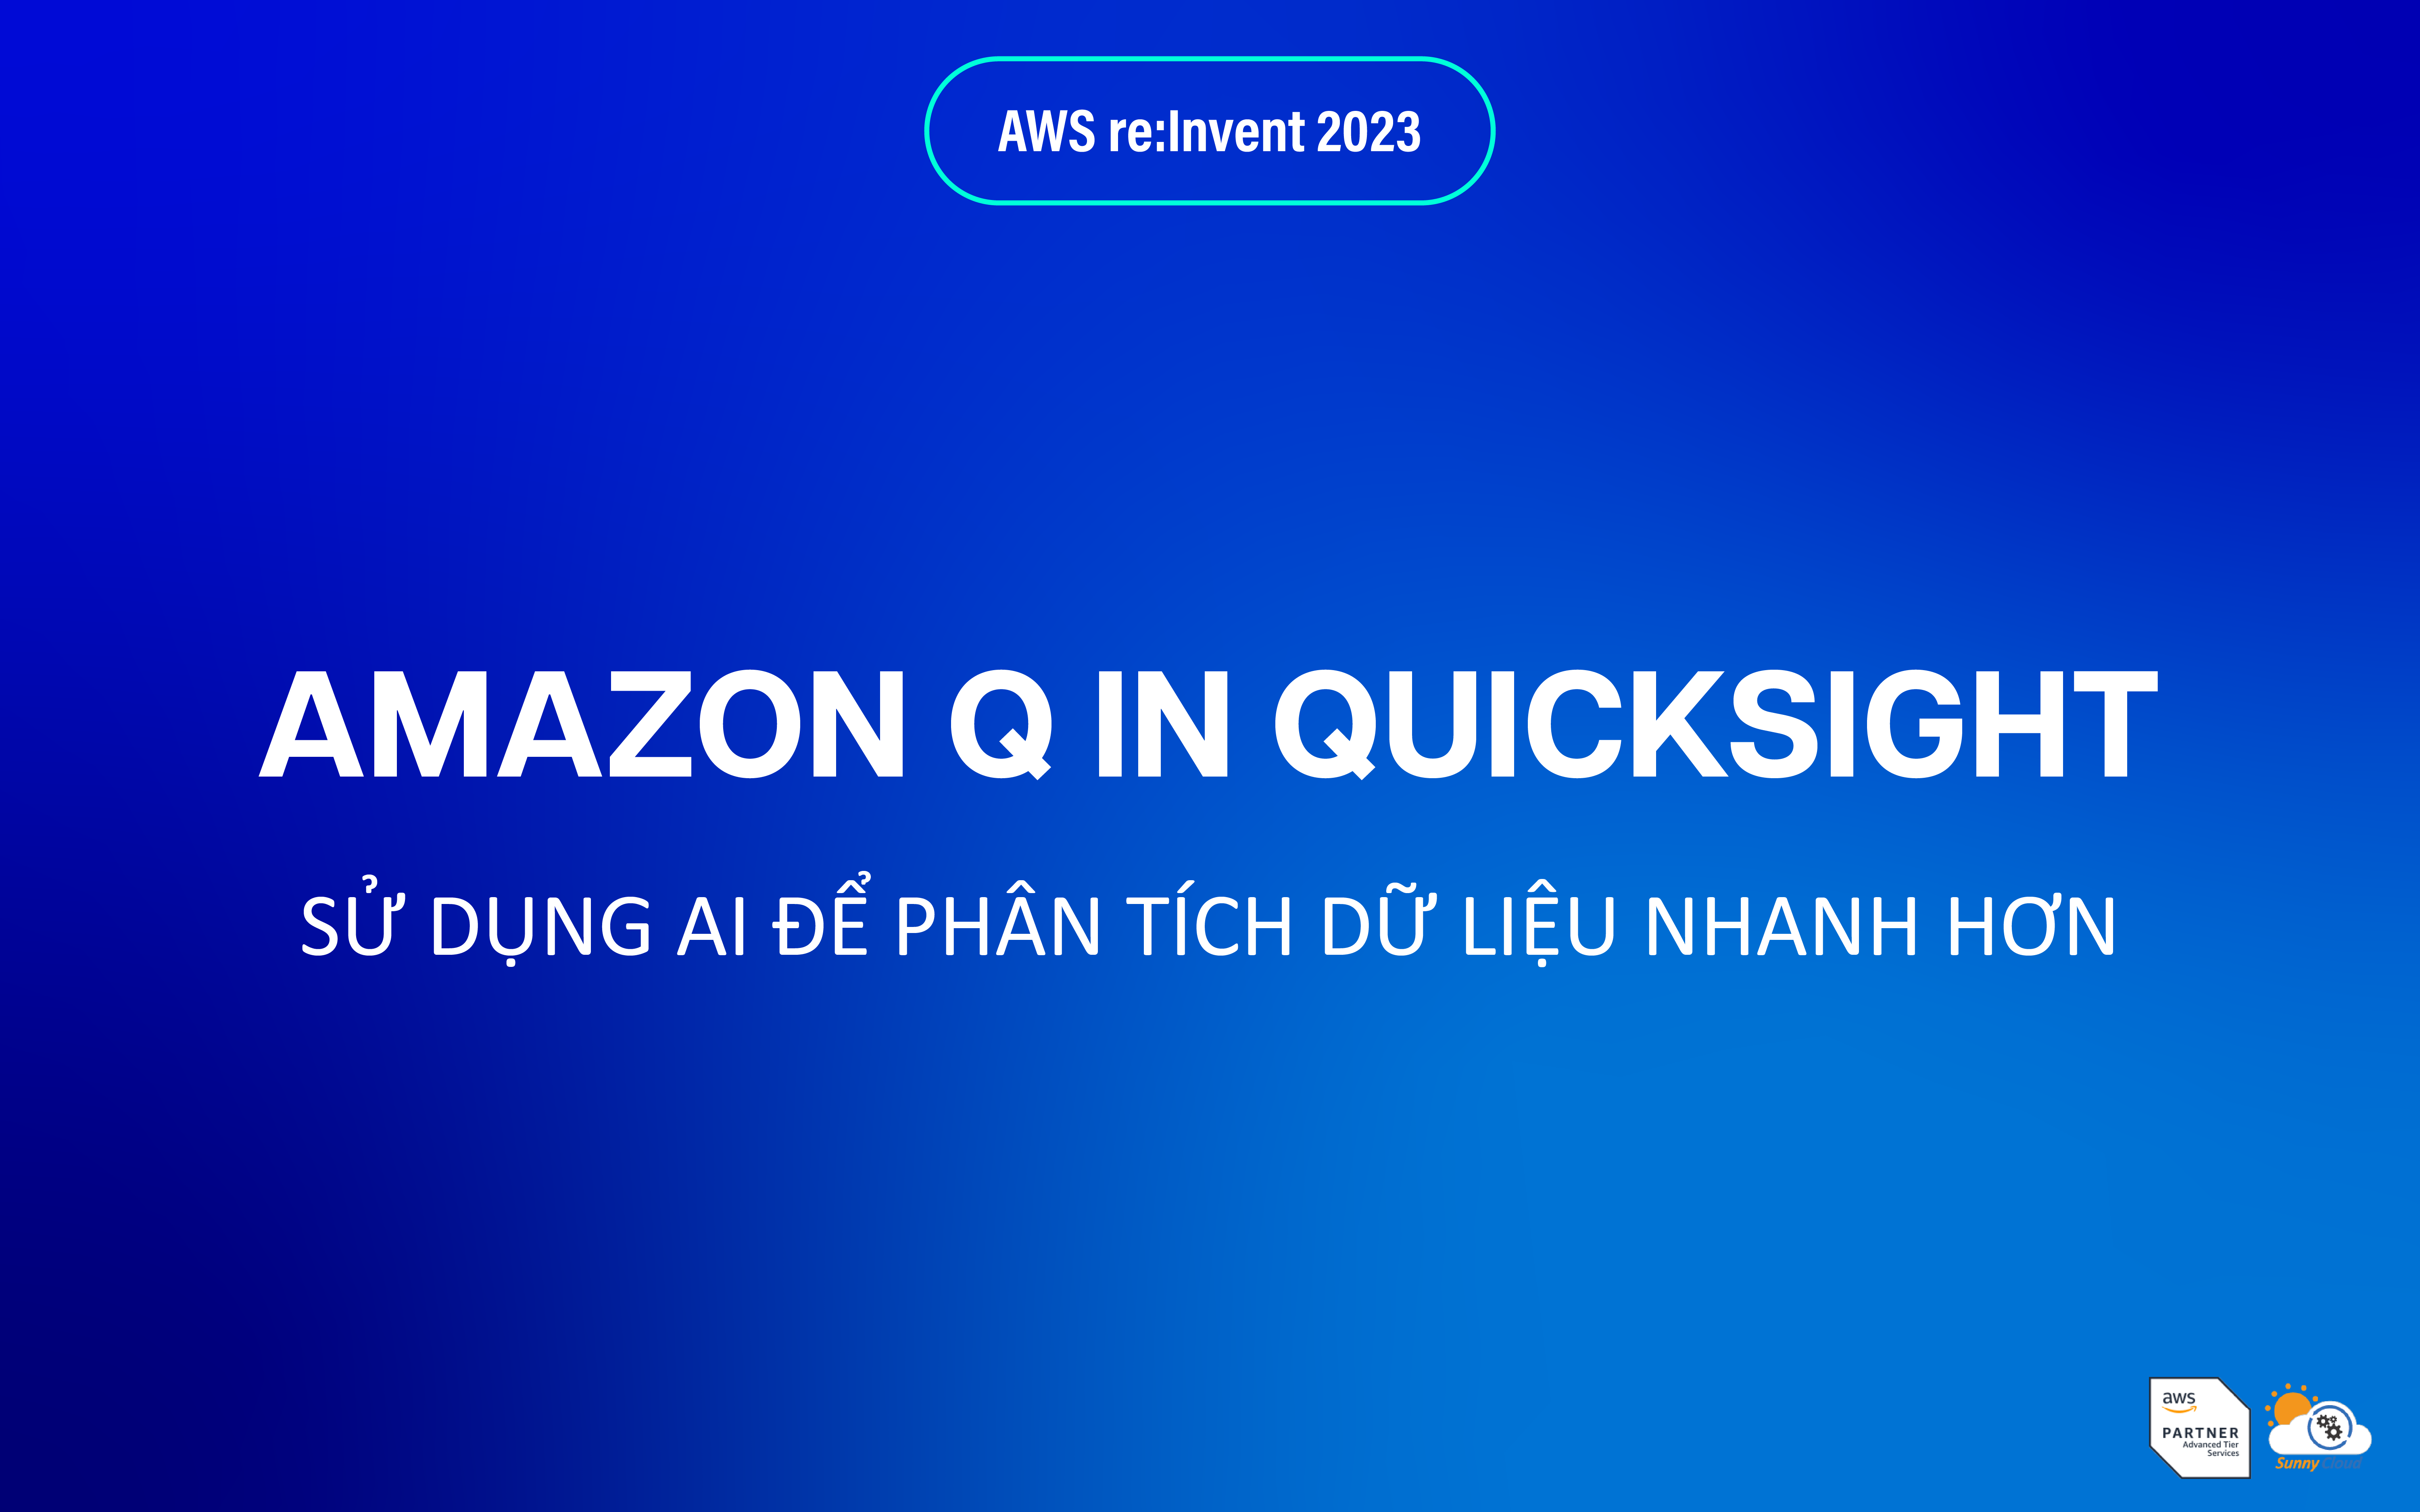 Amazon Q in QuickSight (preview) – Mở rộng tính năng Gen BI